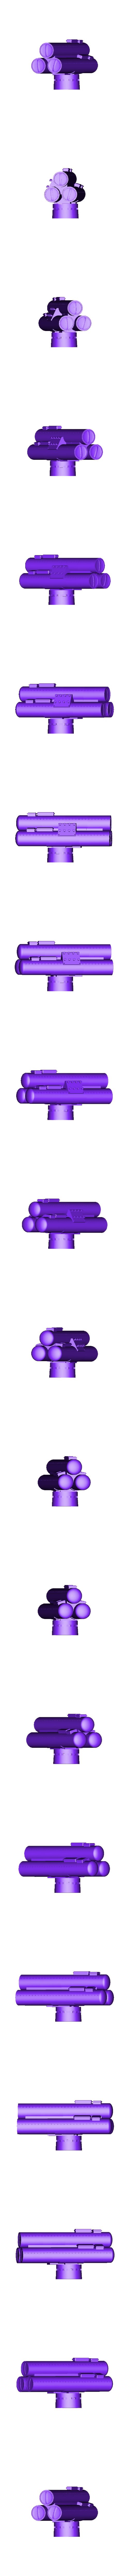 ΜΚ-32 Torpedo tube assy.STL Télécharger fichier STL MK 32 Tube lance-torpilles • Plan pour impression 3D, Midnight_Workz